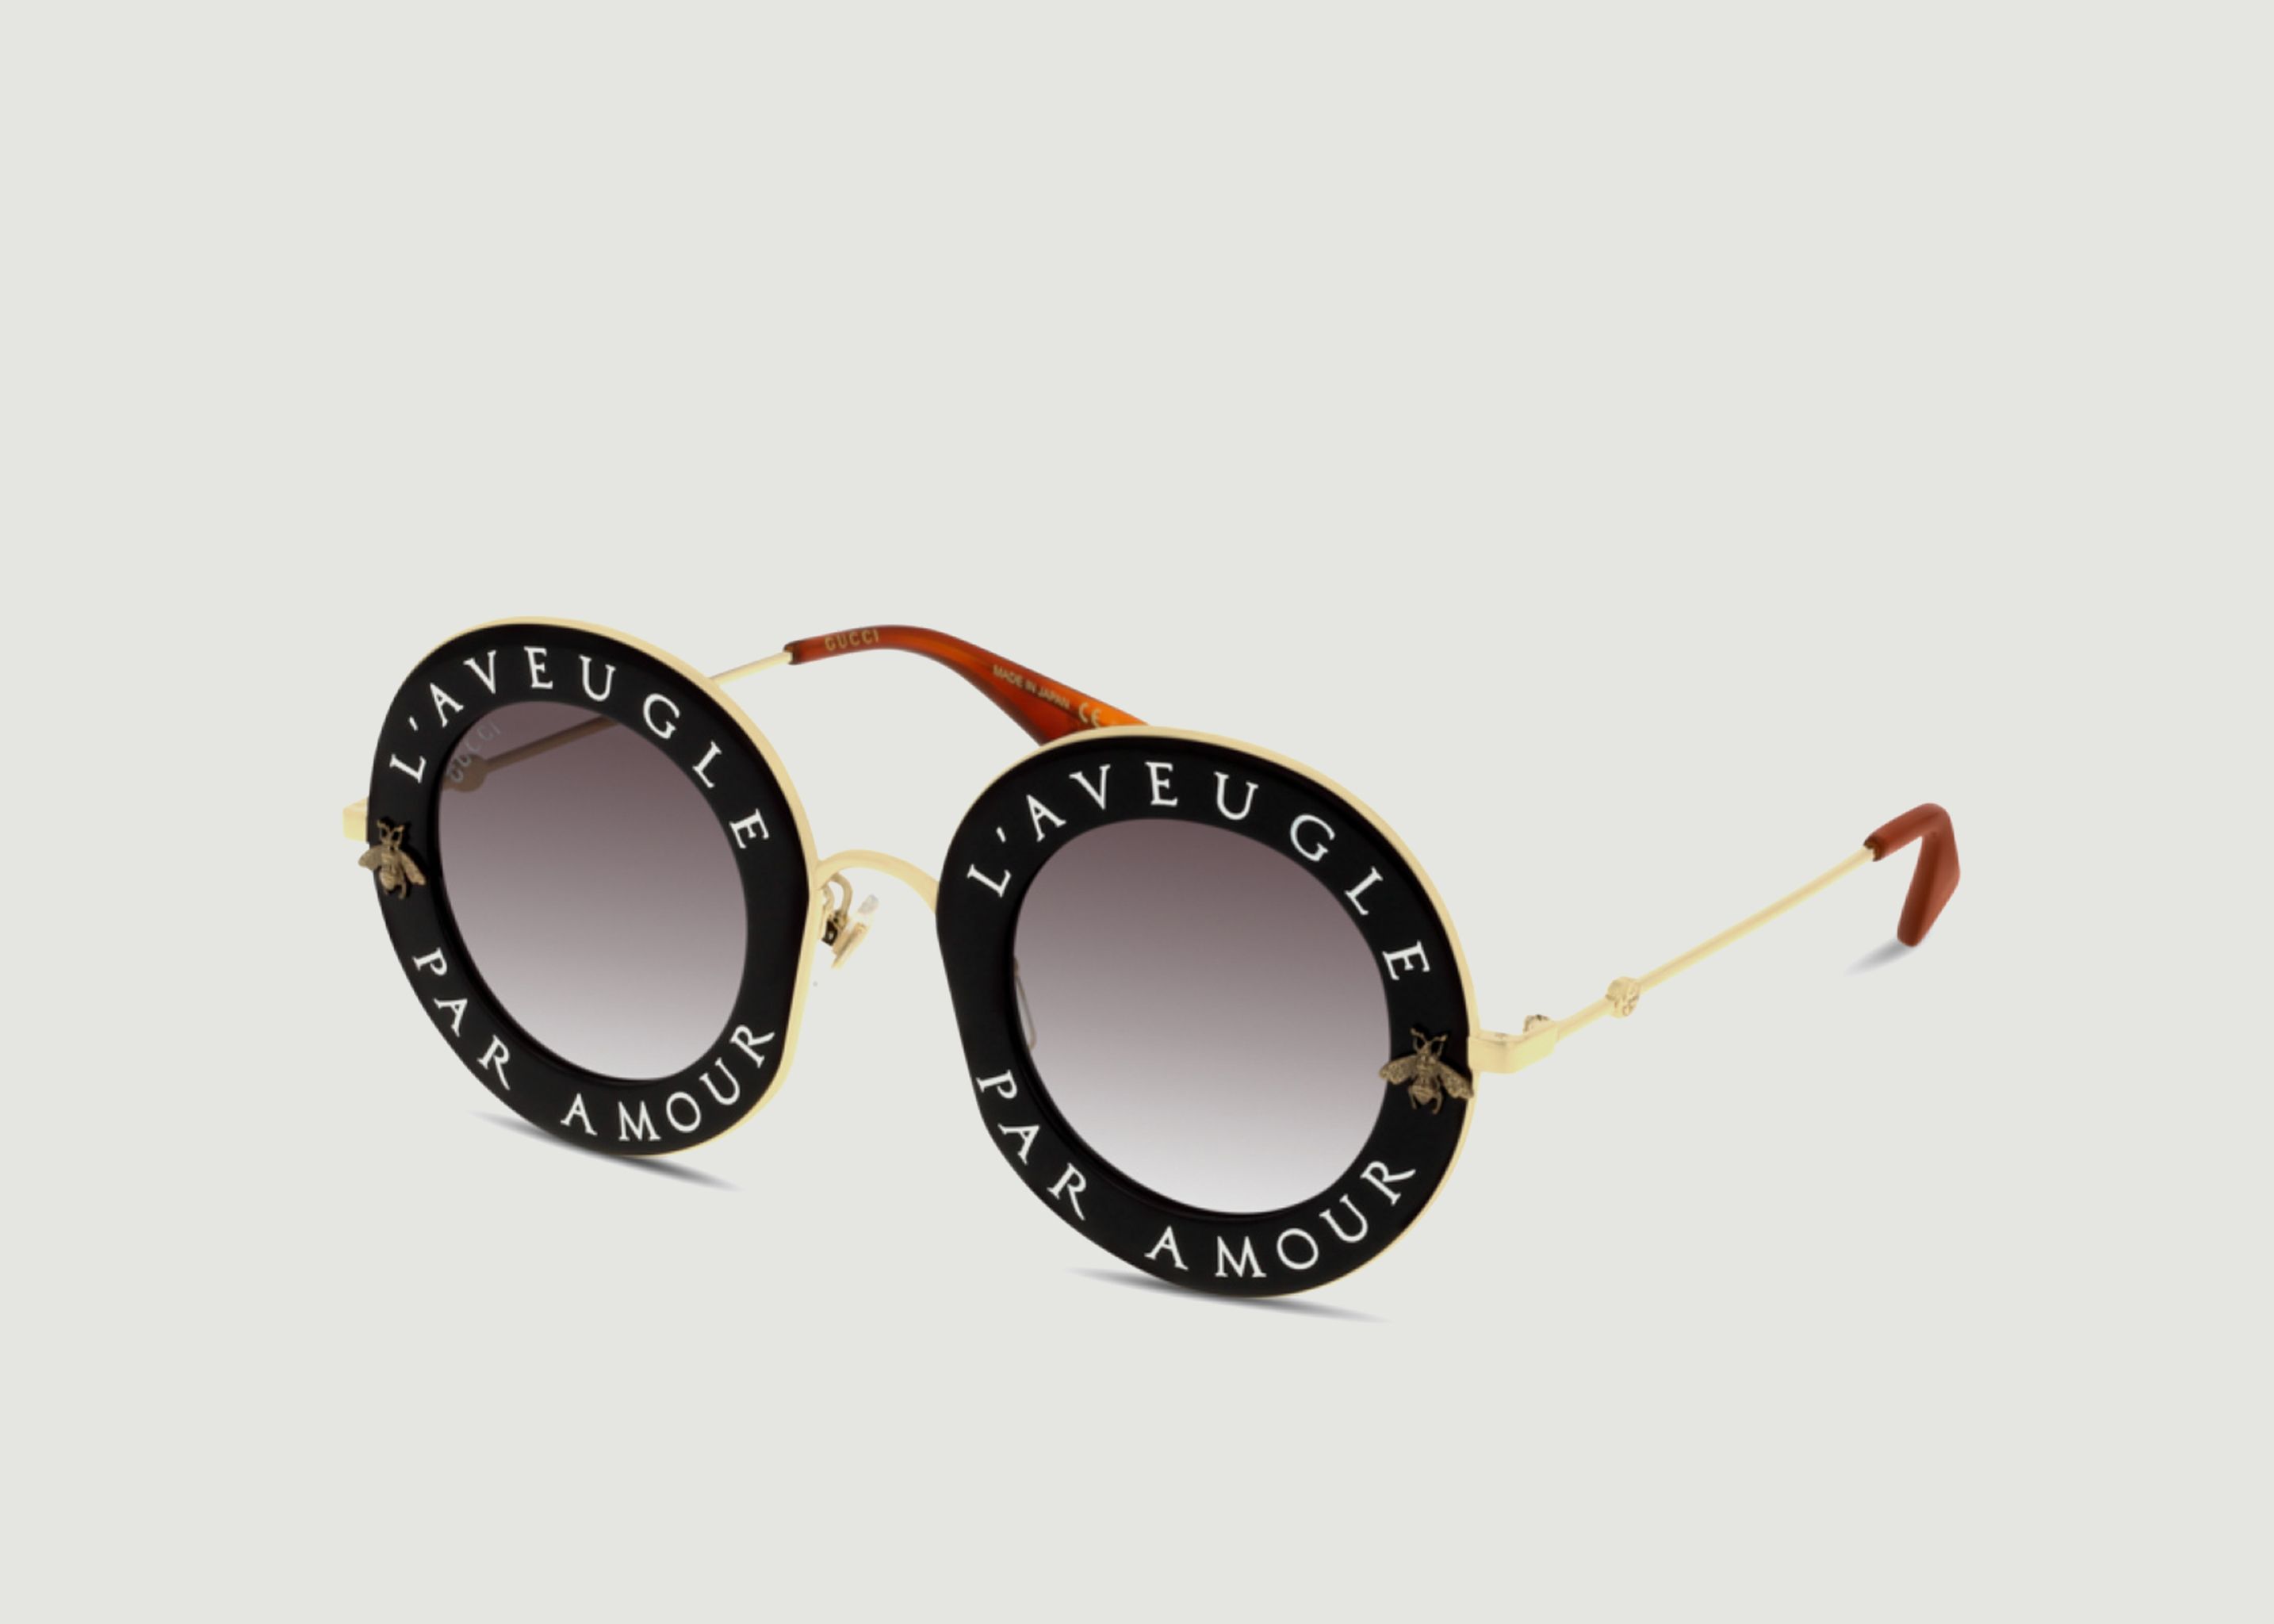 Hililand Lunettes de couleur aveugles Lunettes de couleur aveugle  revêtement double face rose plein cadre unisexe lunettes